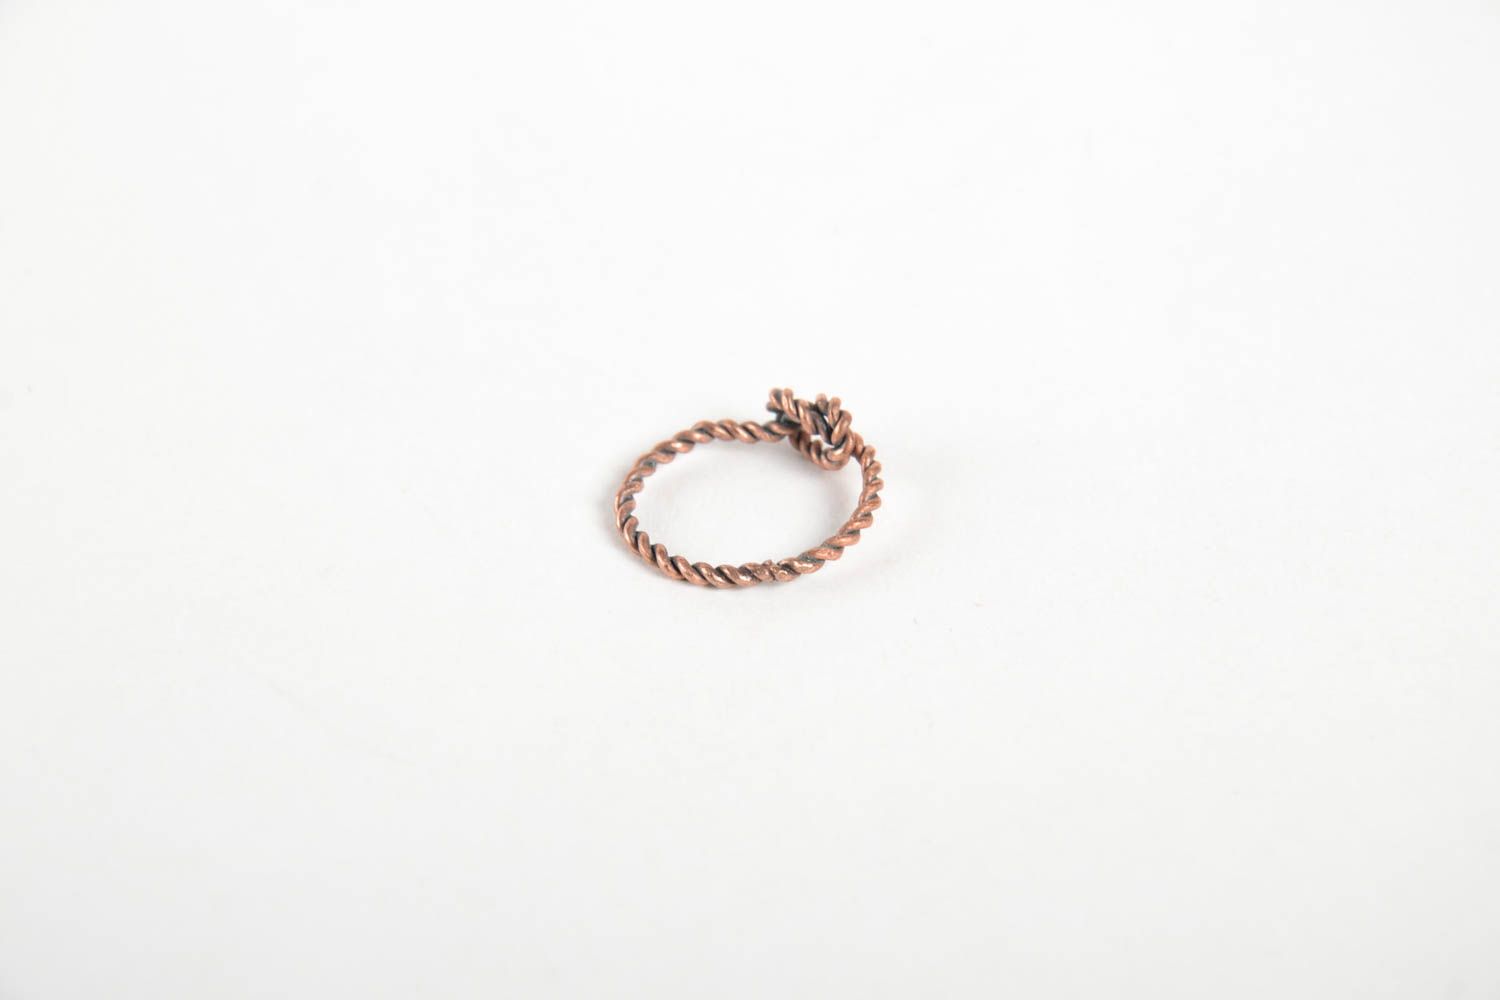 Необычное кольцо ручной работы женское кольцо и медной проволоки красивое кольцо фото 5